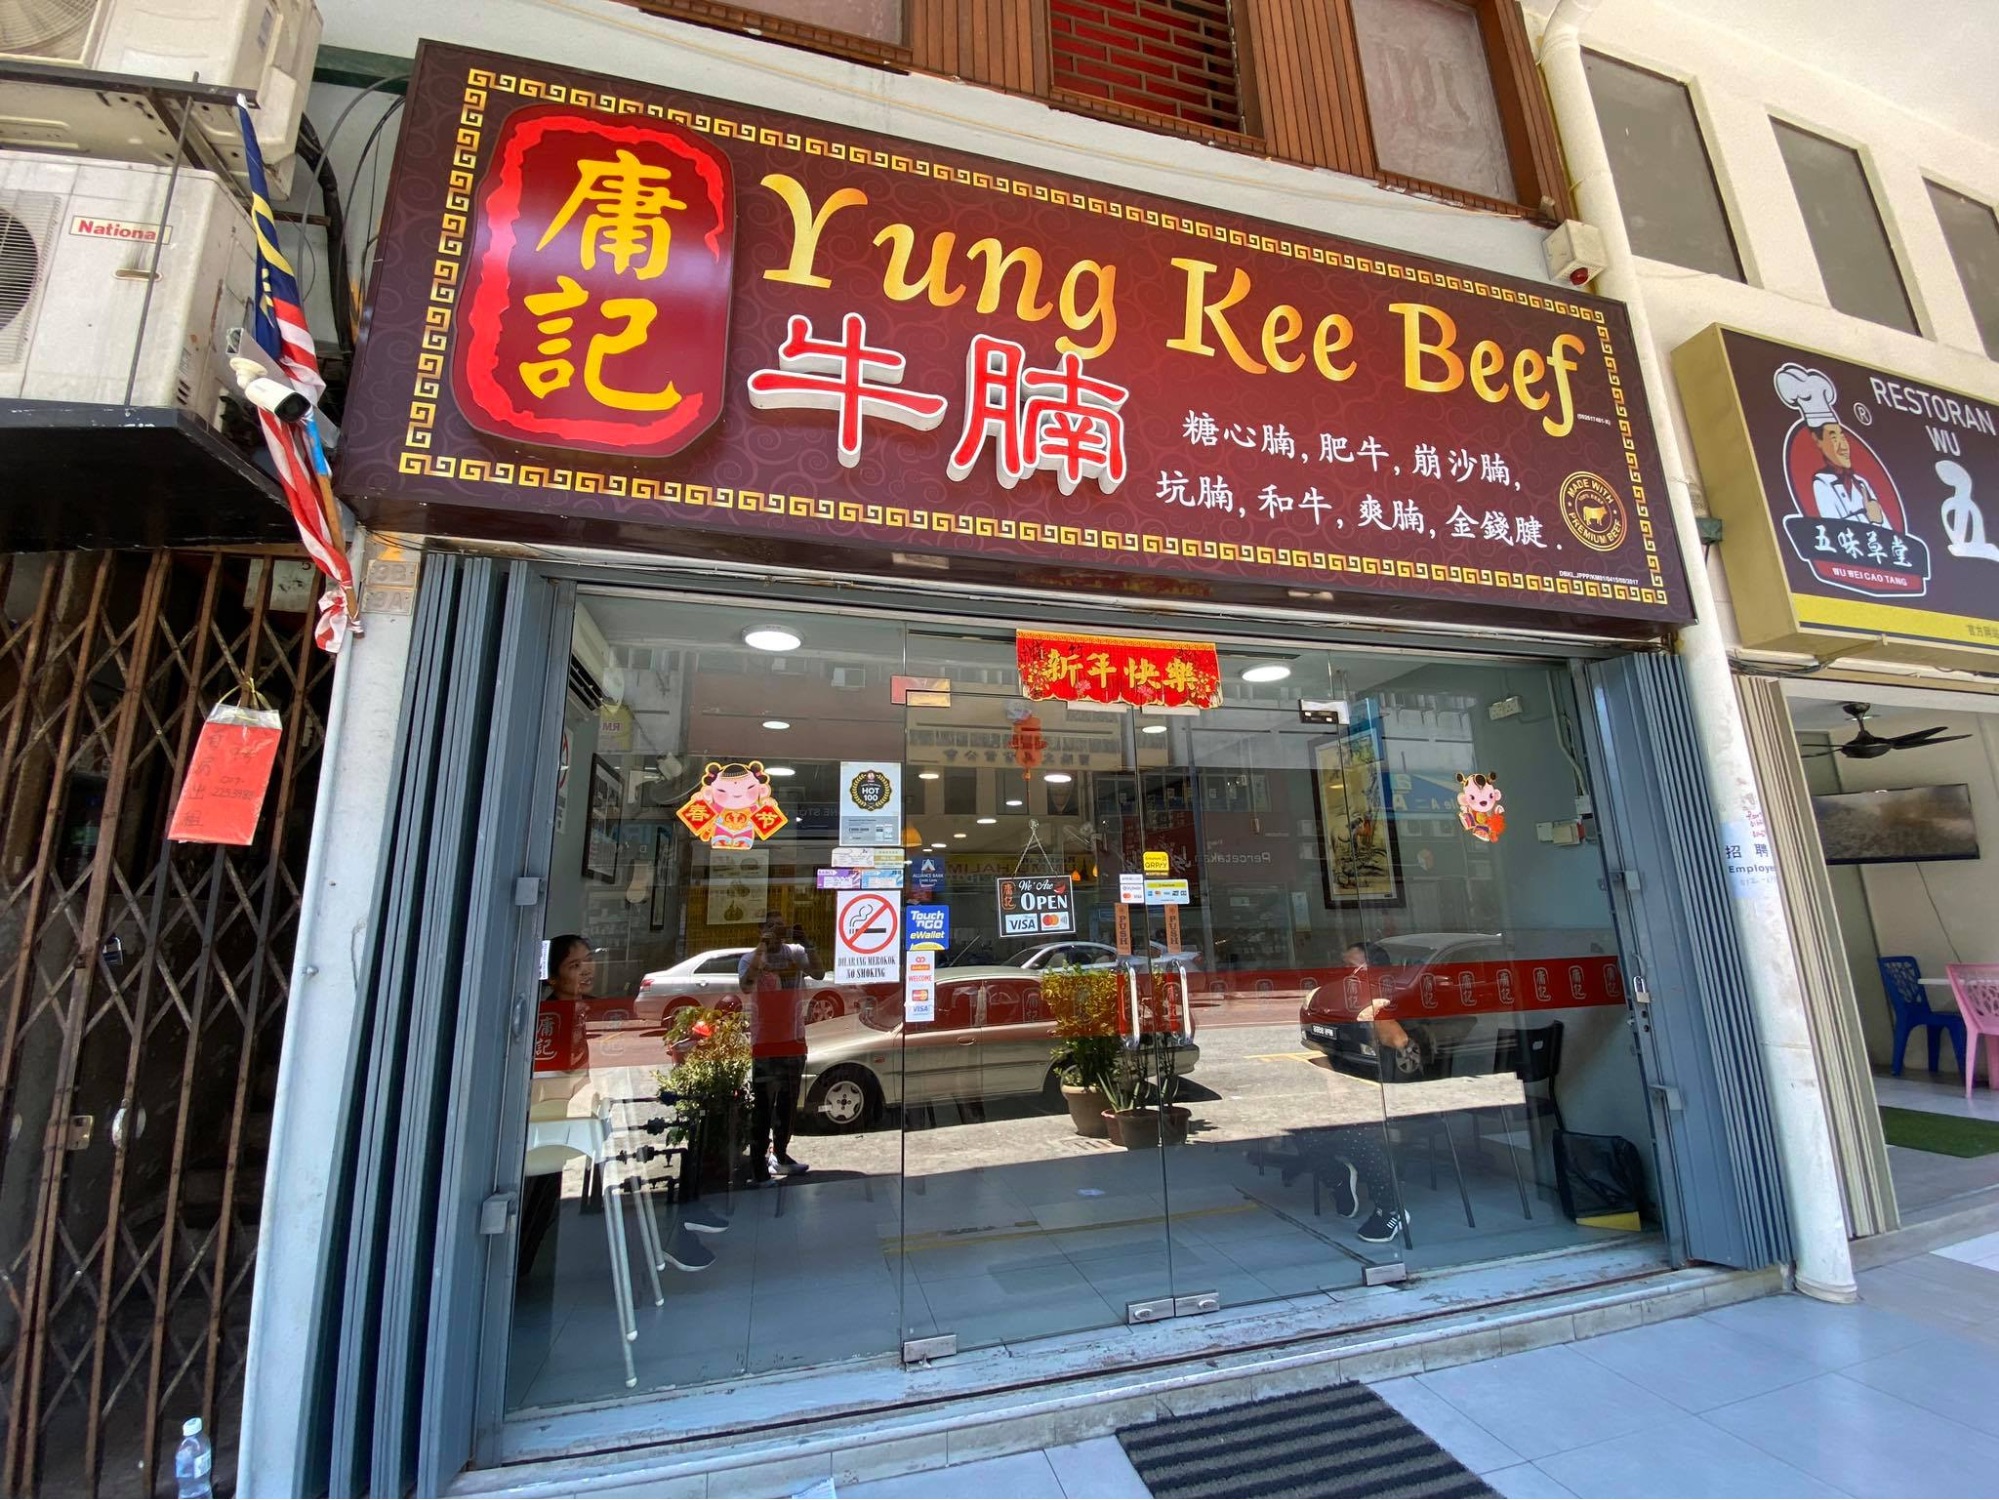 Pudu food - yung kee beef noodles